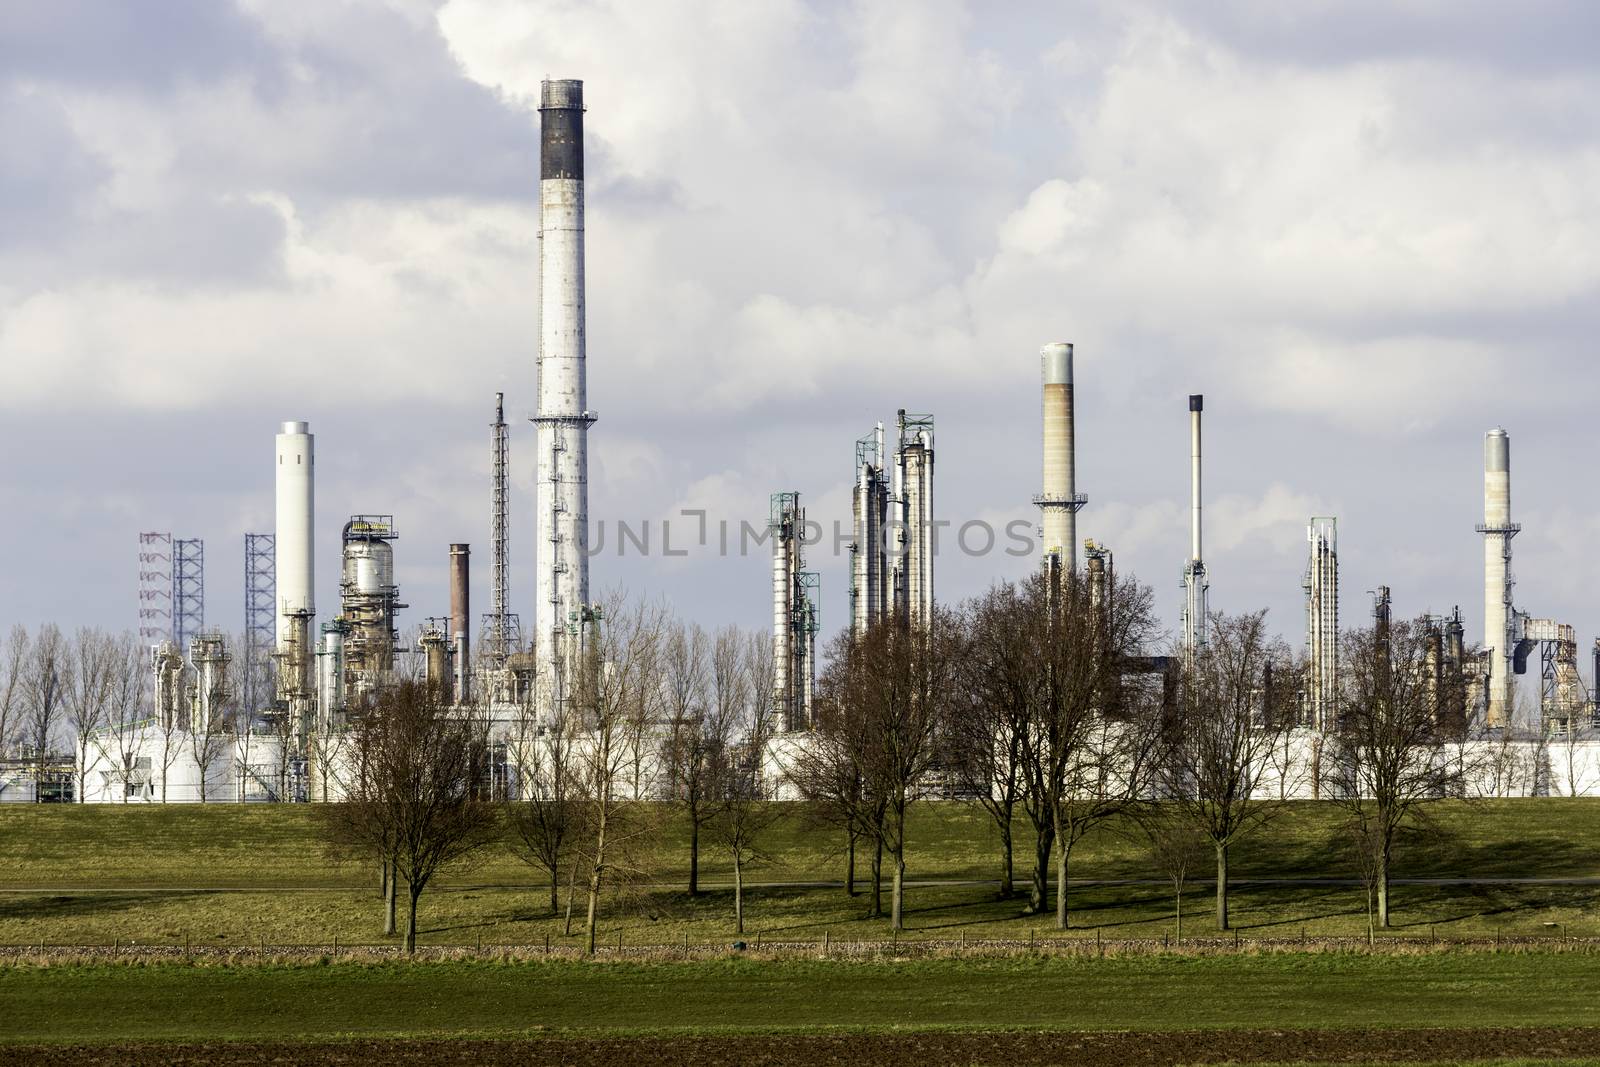 skyline refinery europoort rotterdam by compuinfoto